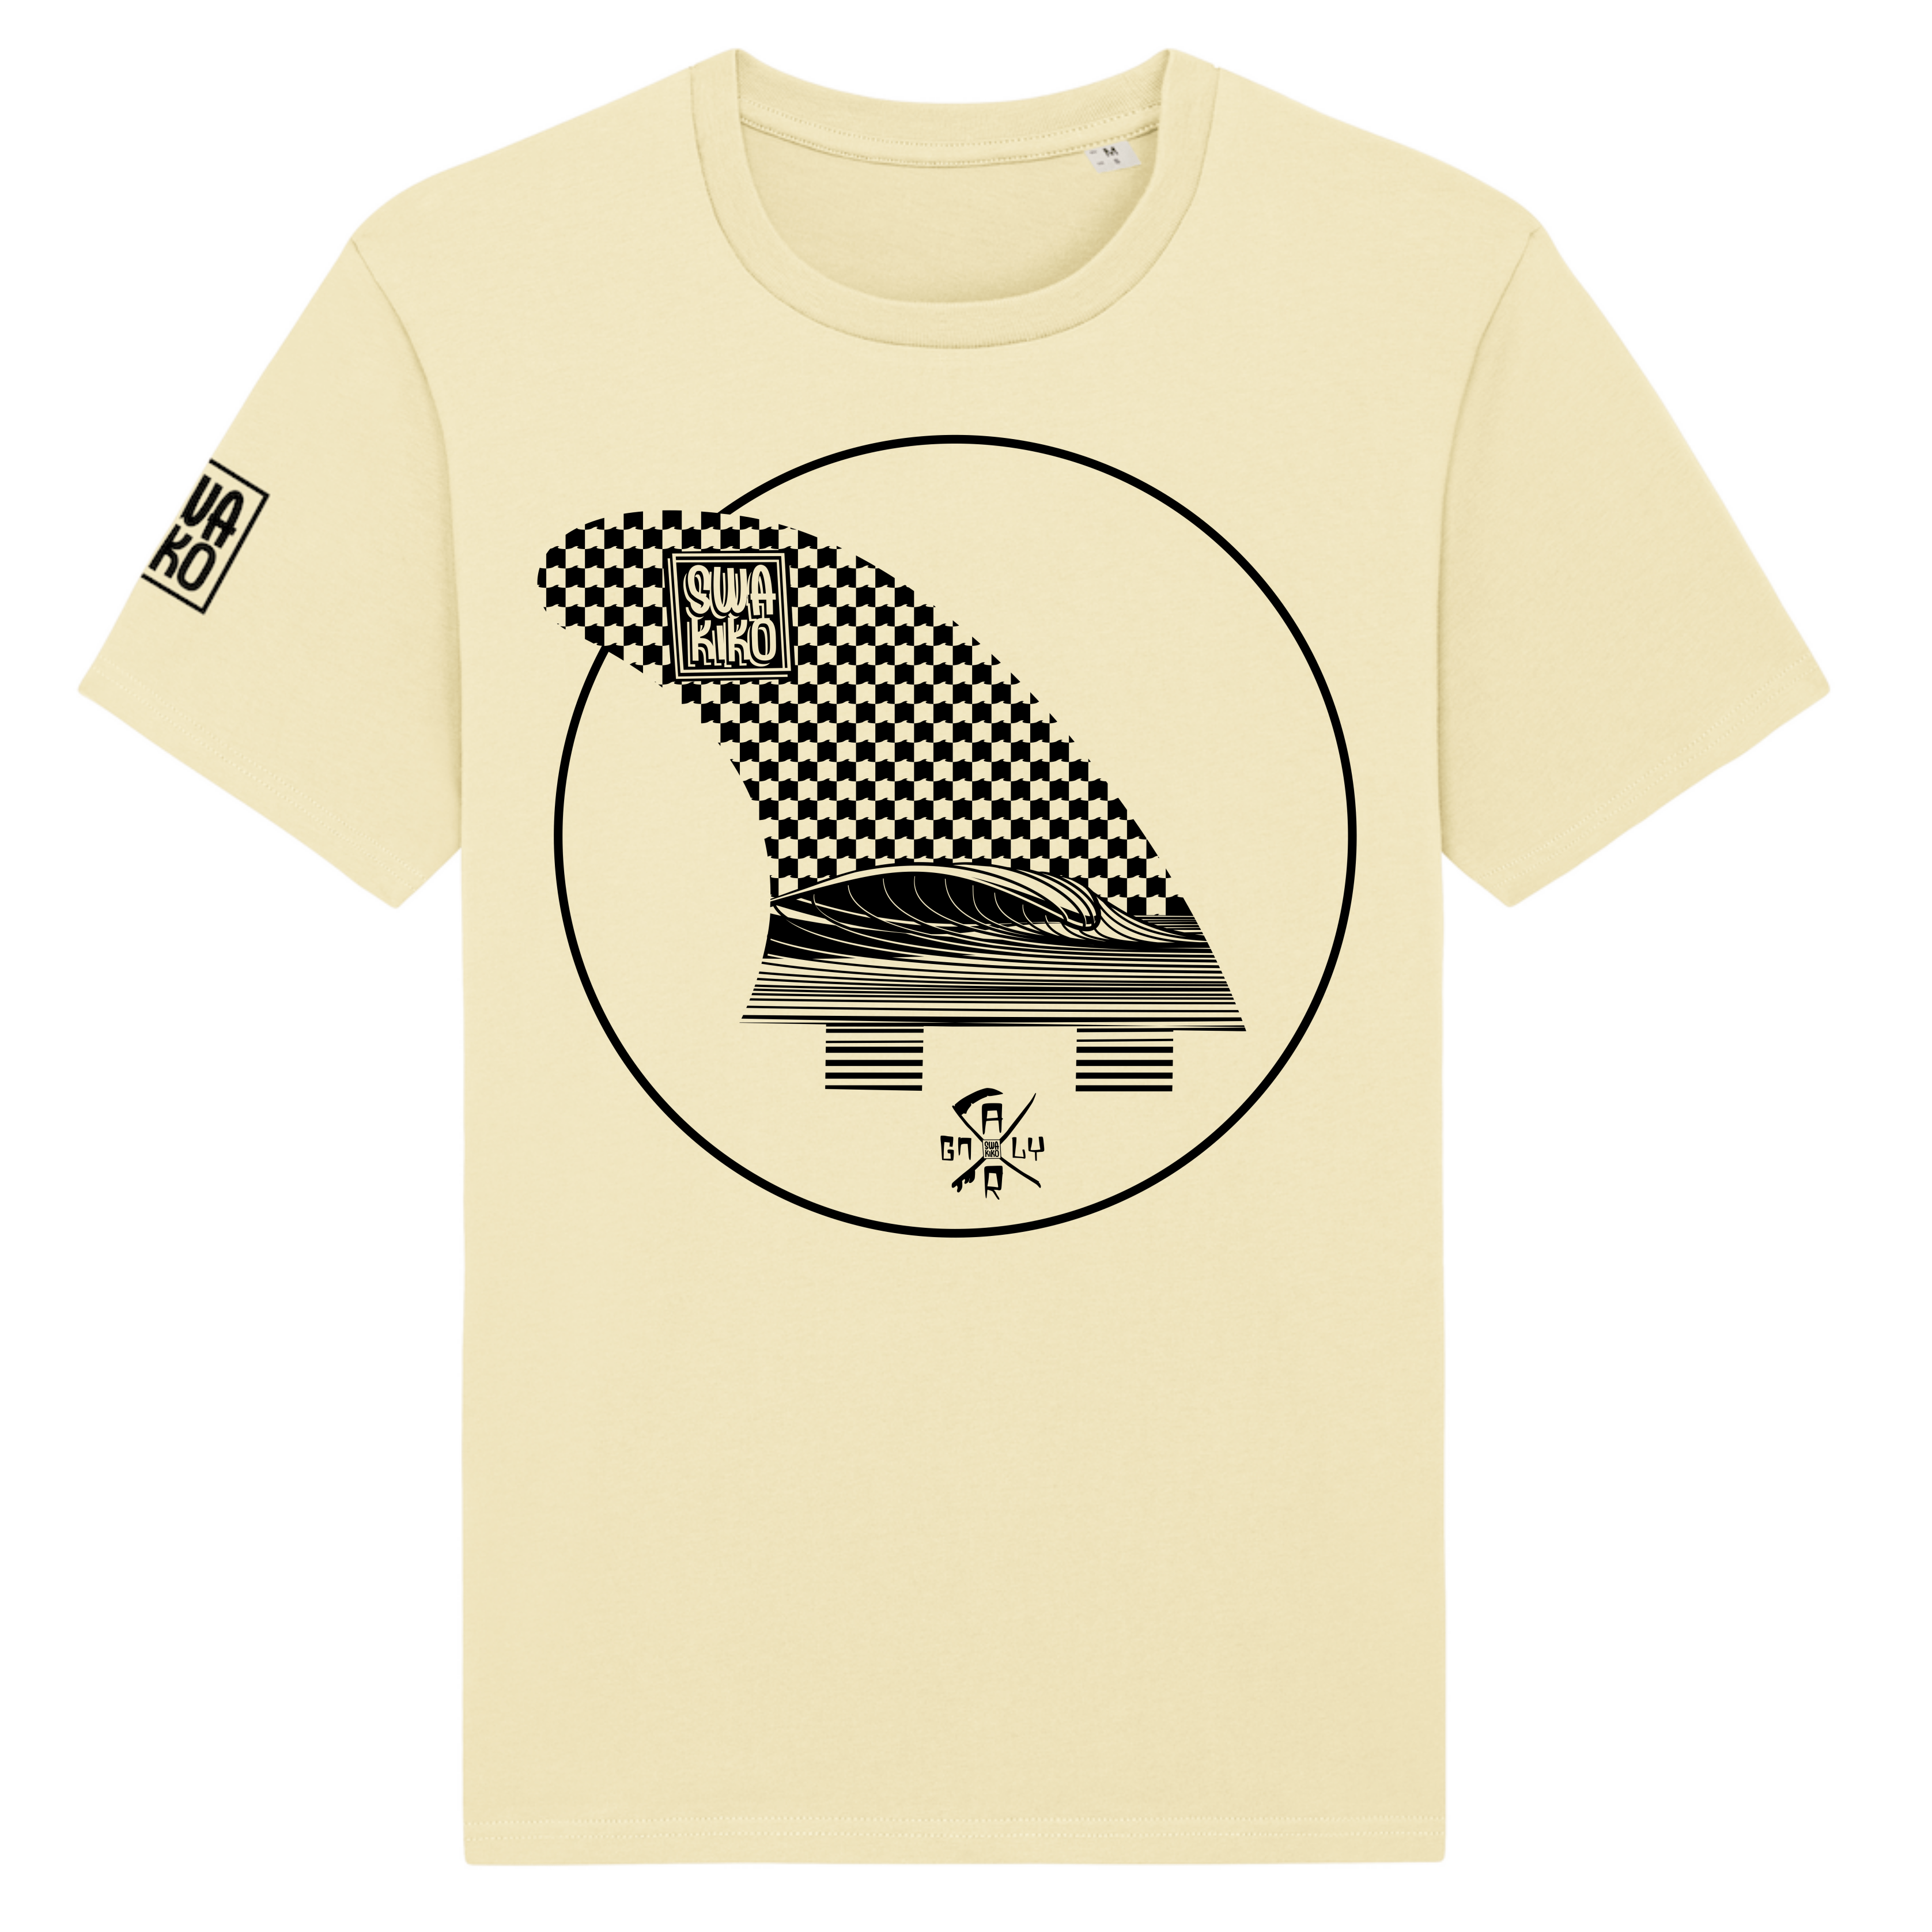 Geel T-shirt met geblokt design en mooie golf in een surfboard fin 